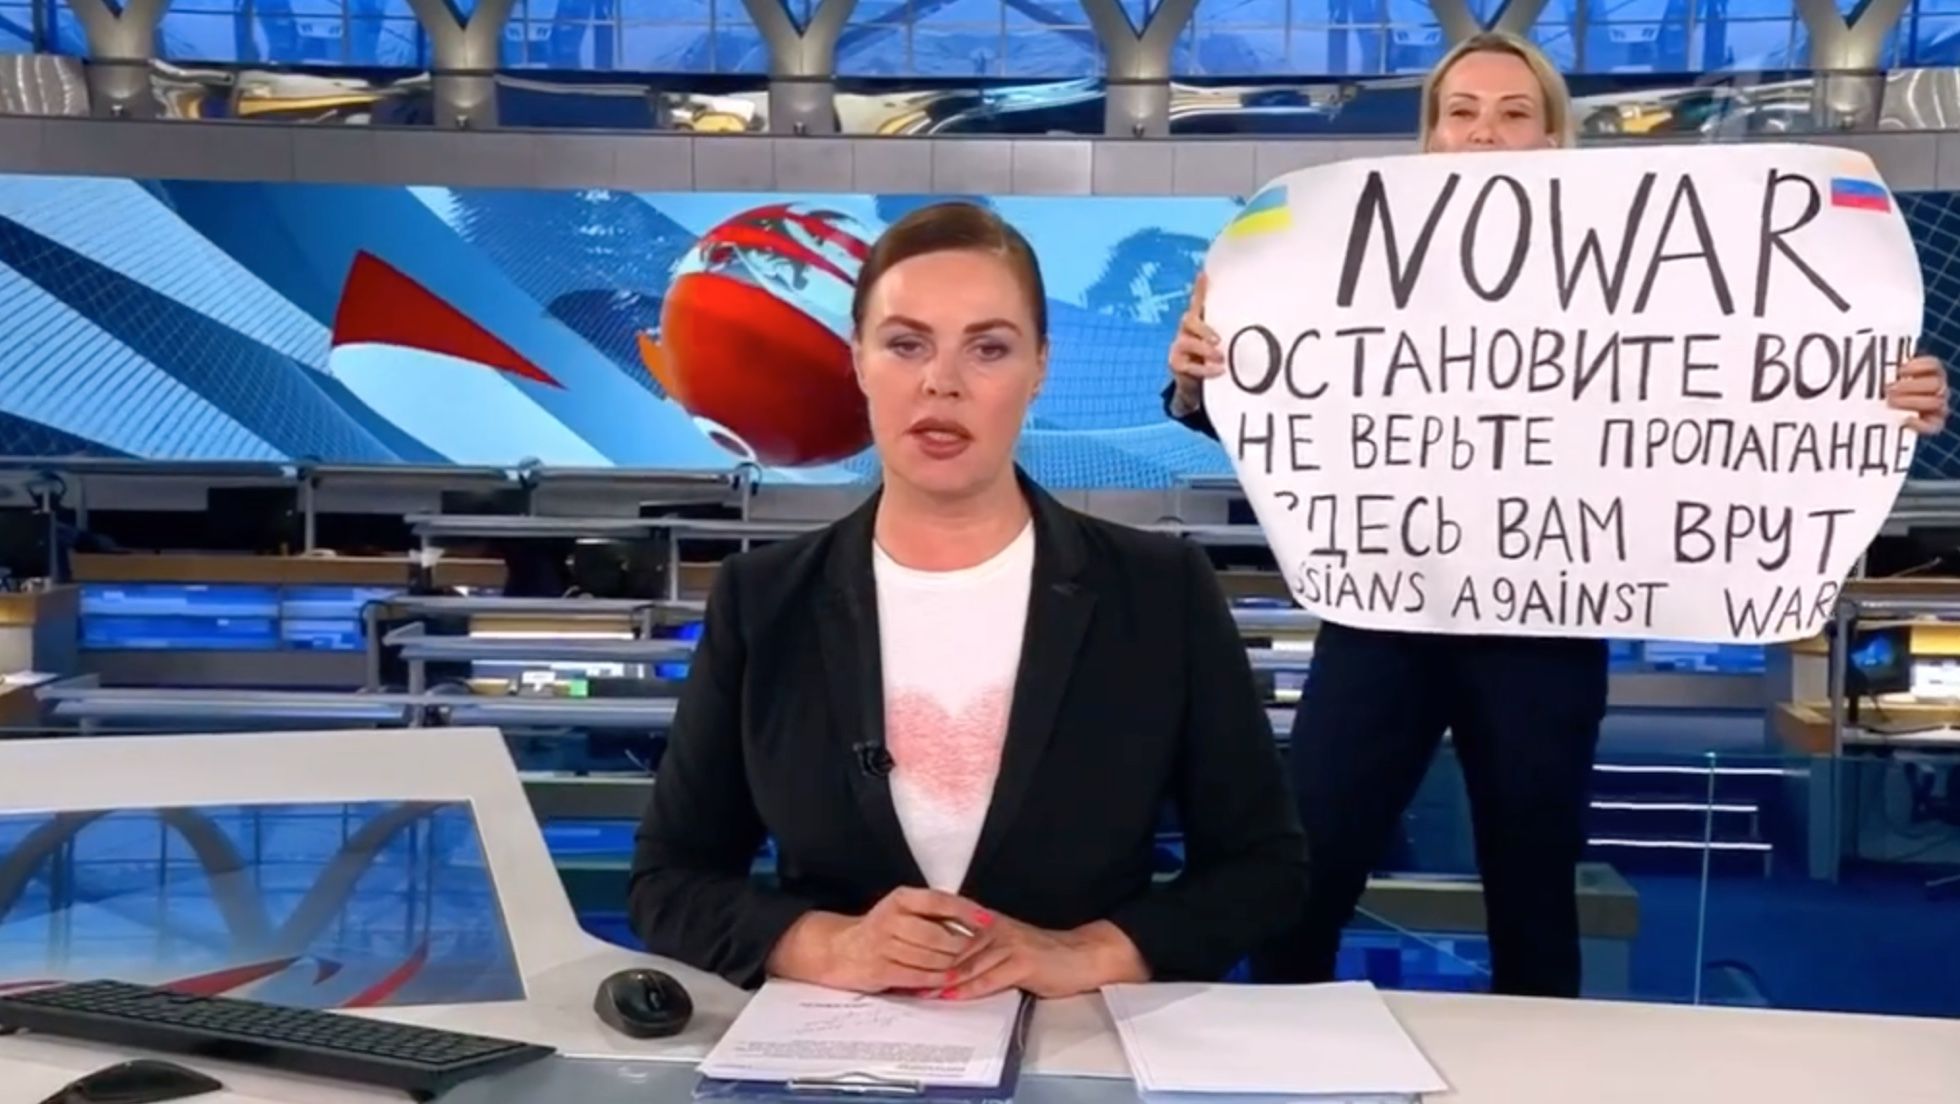 Редактор Первого канала Марина Овсянникова с плакатом в эфире